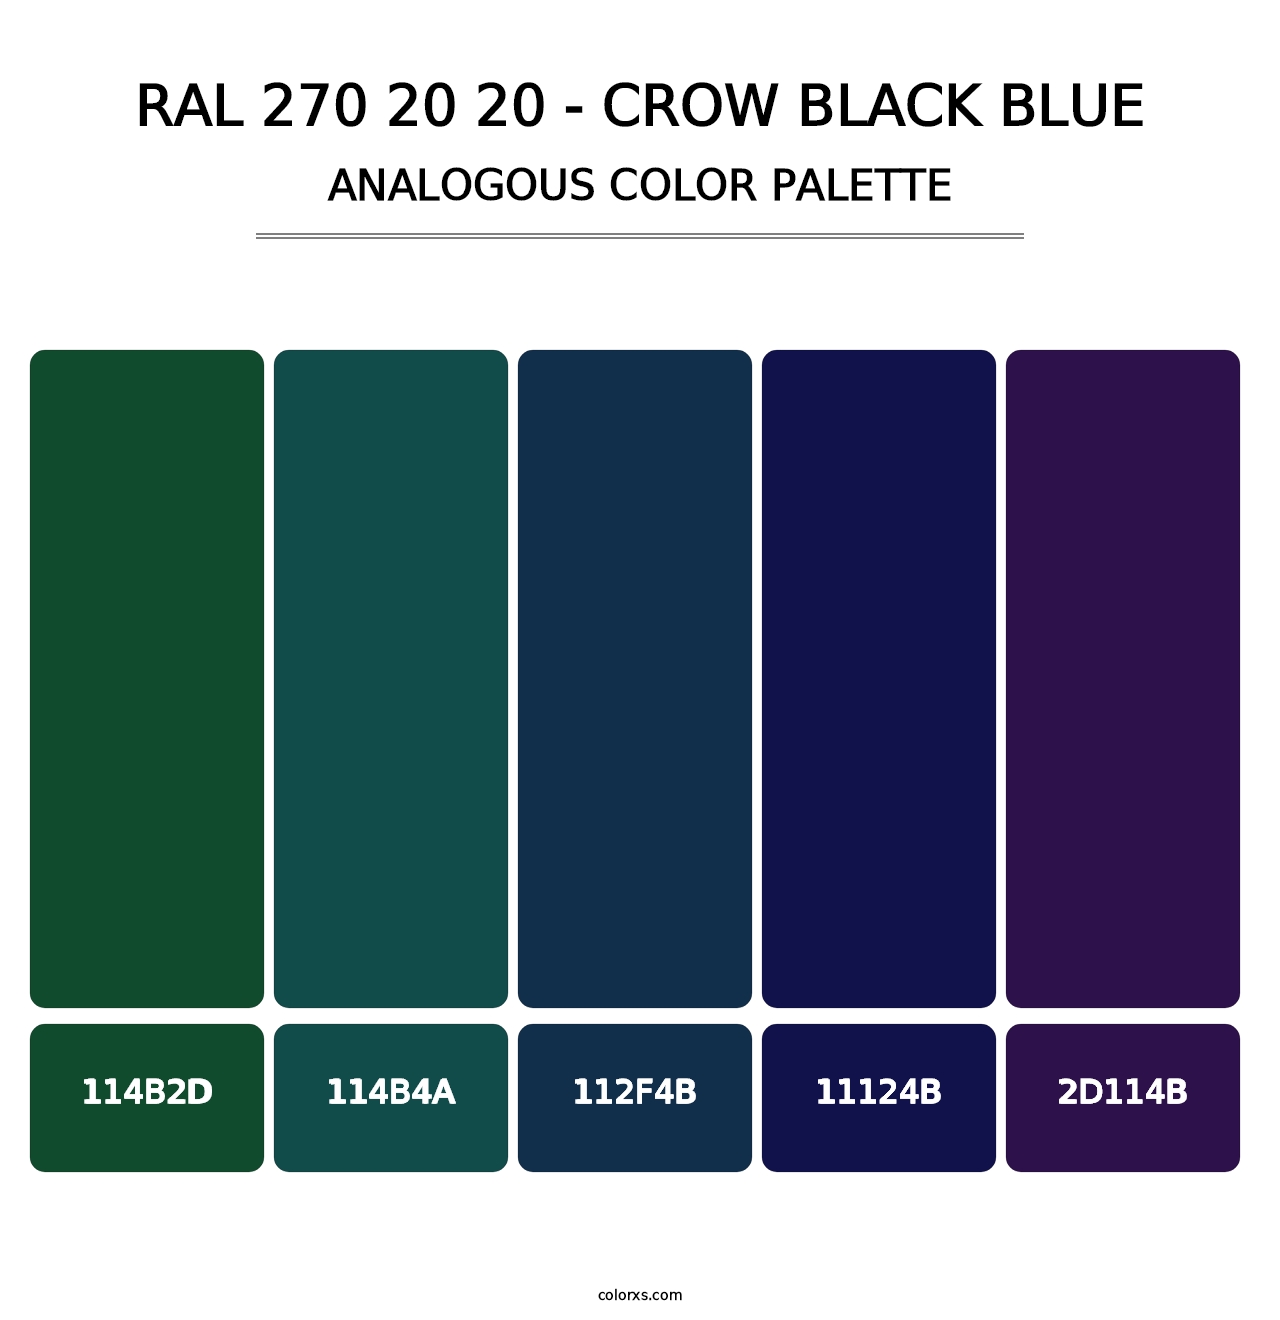 RAL 270 20 20 - Crow Black Blue - Analogous Color Palette